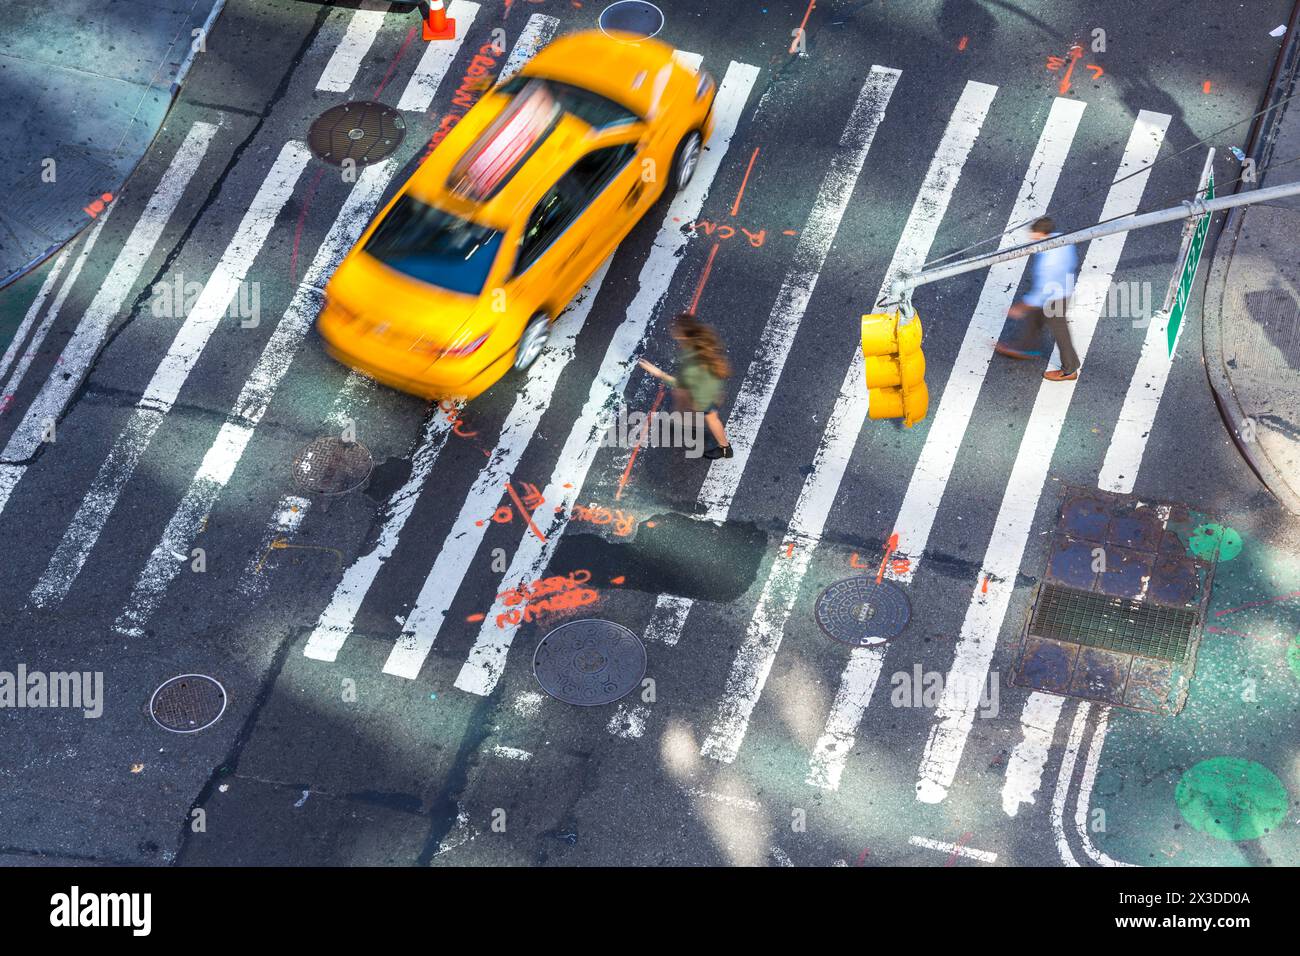 Vista aerea del taxi giallo e dell'attraversamento pedonale, Central Manhattan, New York, Stati Uniti Foto Stock